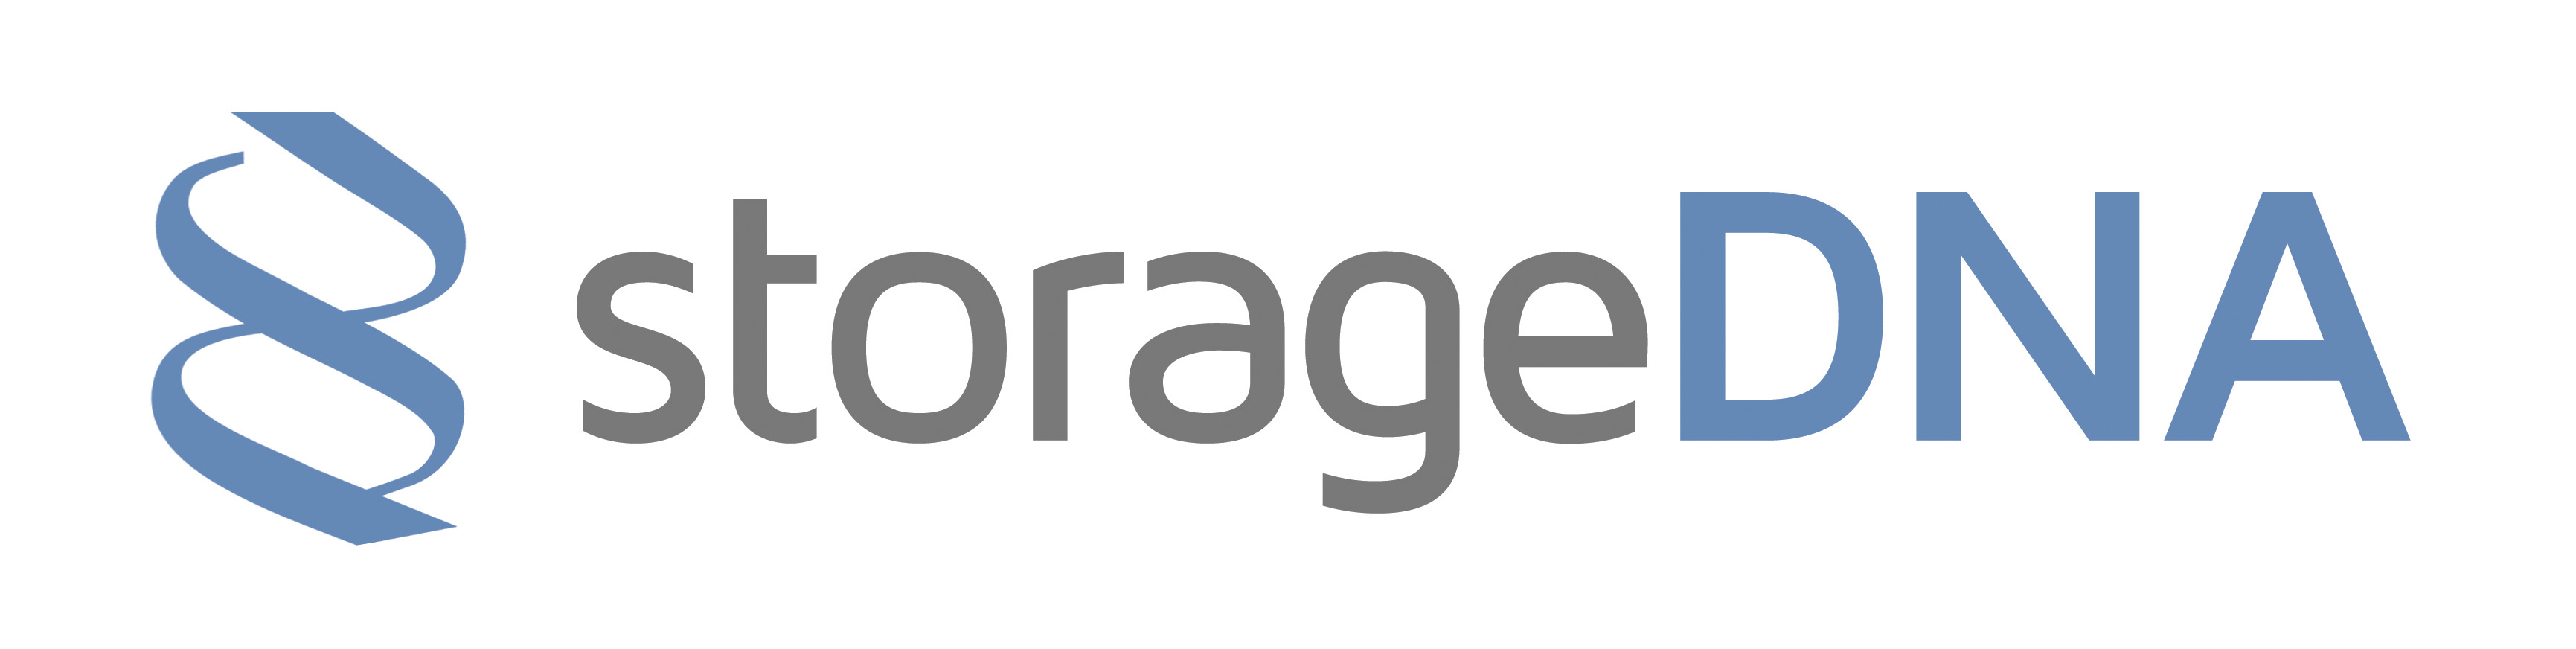 StorageDNA, Inc. Logo